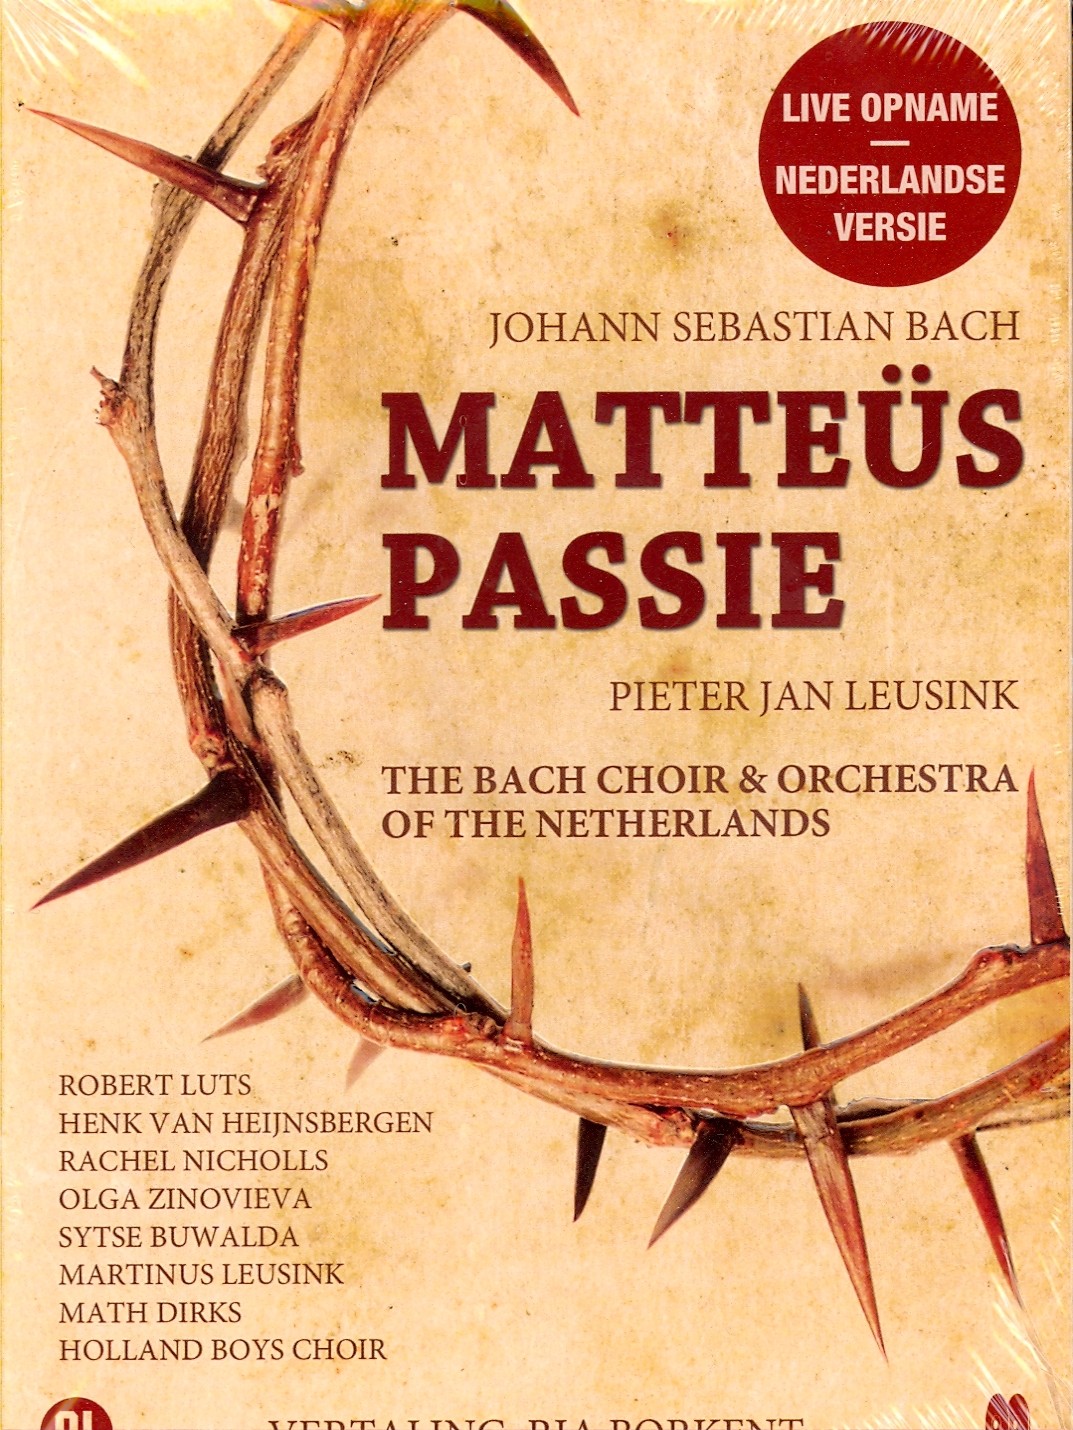 Matteus Passie